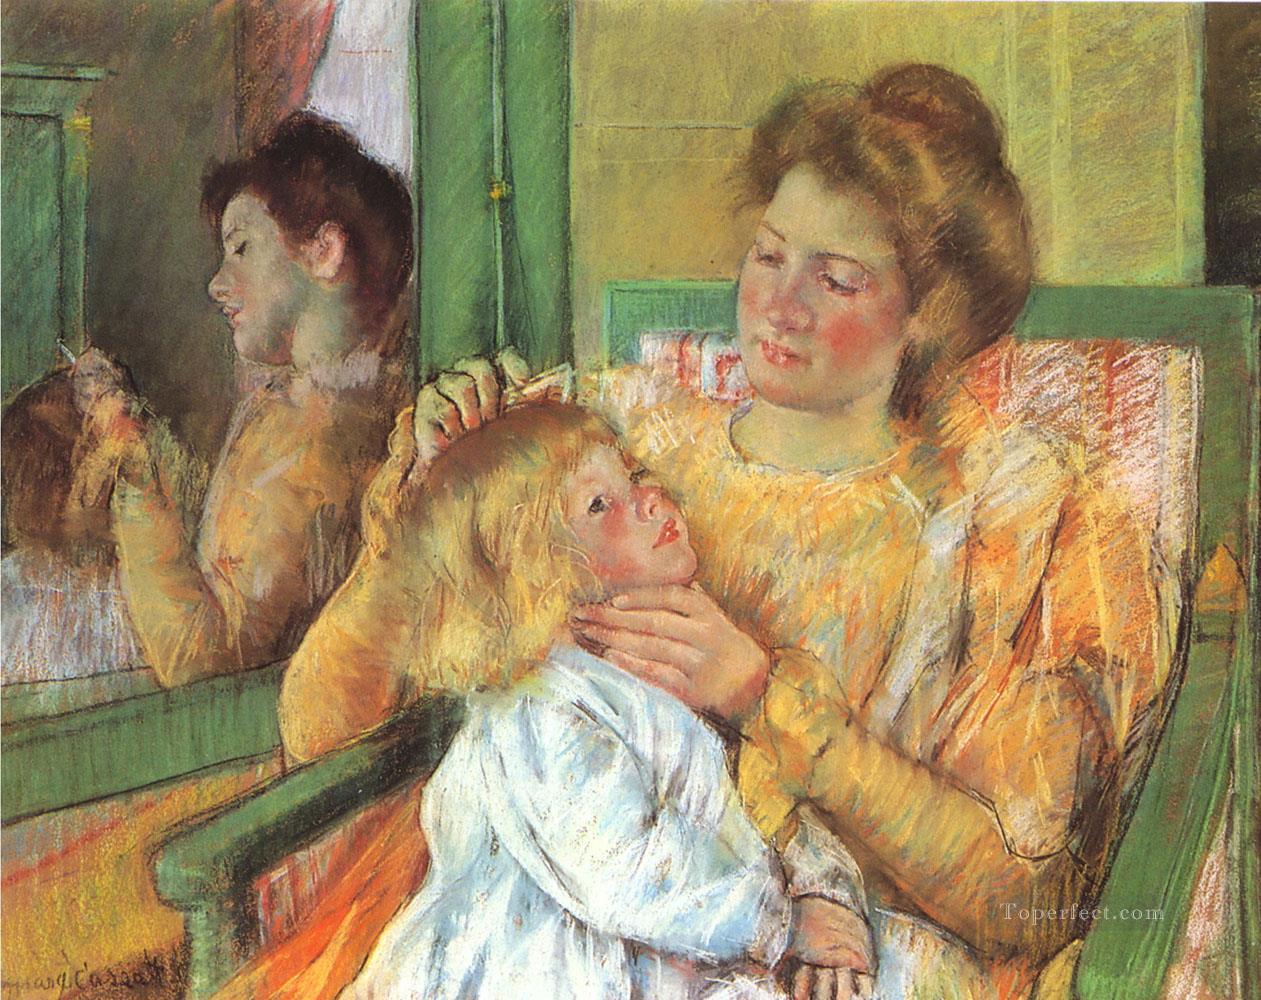 マザー・コーミングの母親たち メアリー・カサット油絵